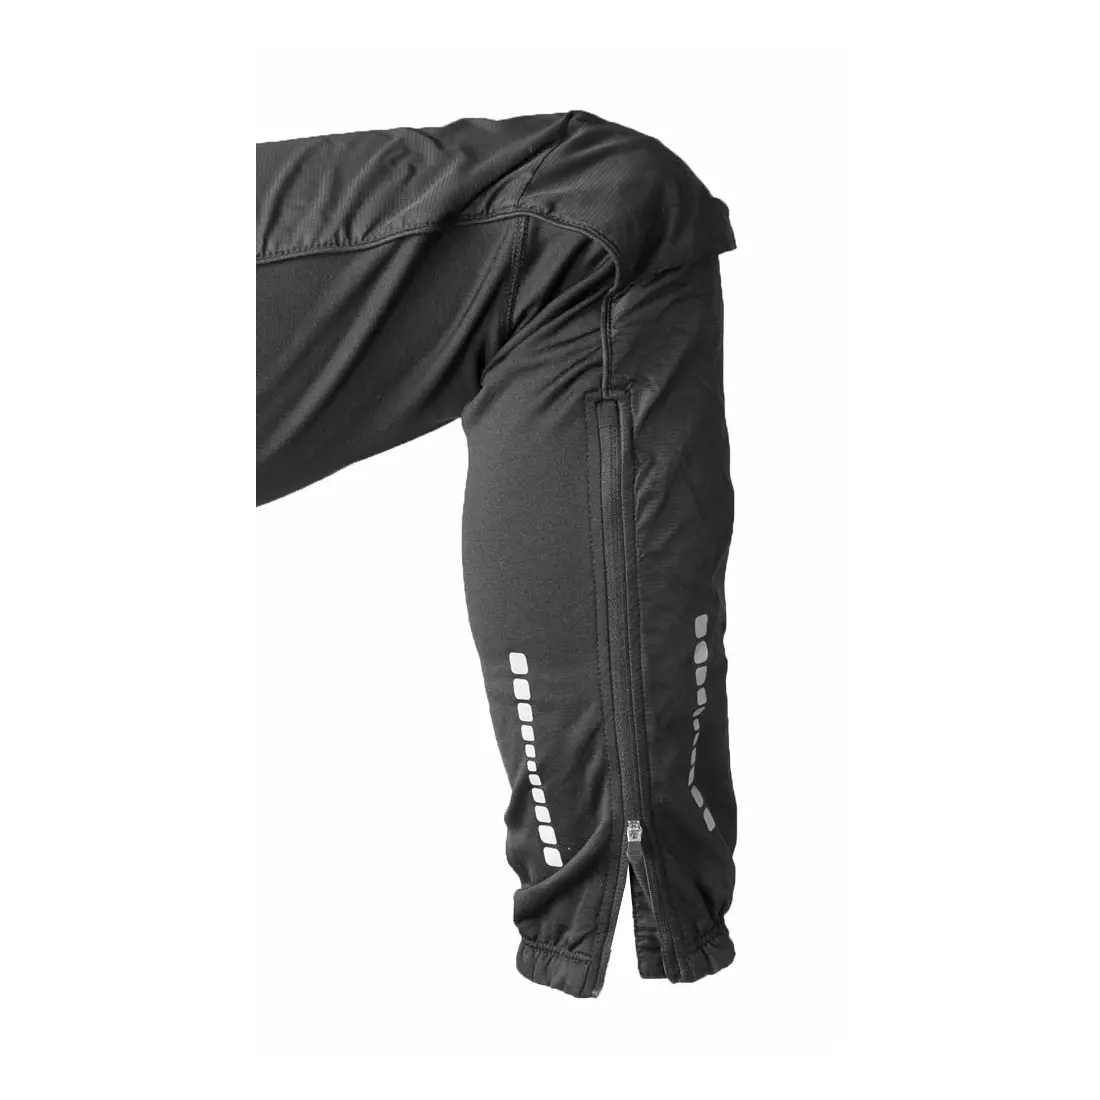 NEWLINE BASE CROSS PANTS - dámské zateplené běžecké kalhoty 13105-060